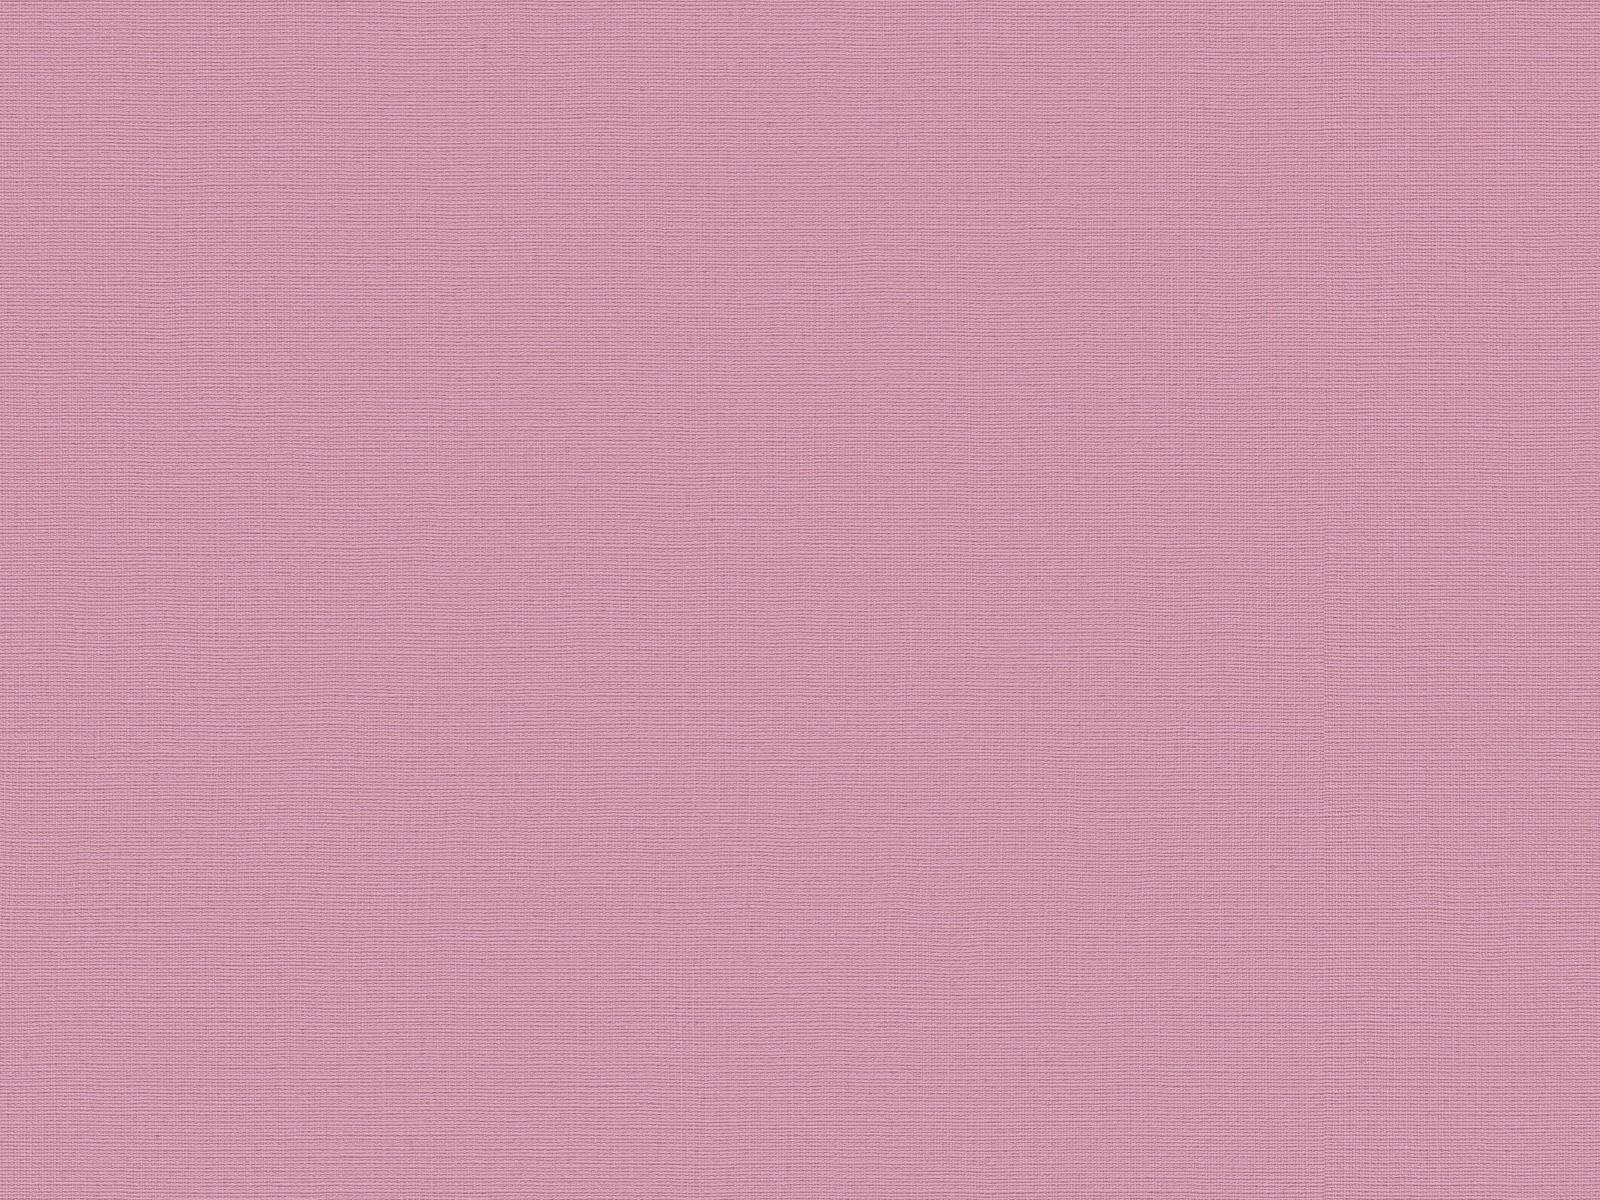 Vliesová tapeta s prirodzenou textilnou štruktúrou v tmavo-ružovej farbe, ER-601636